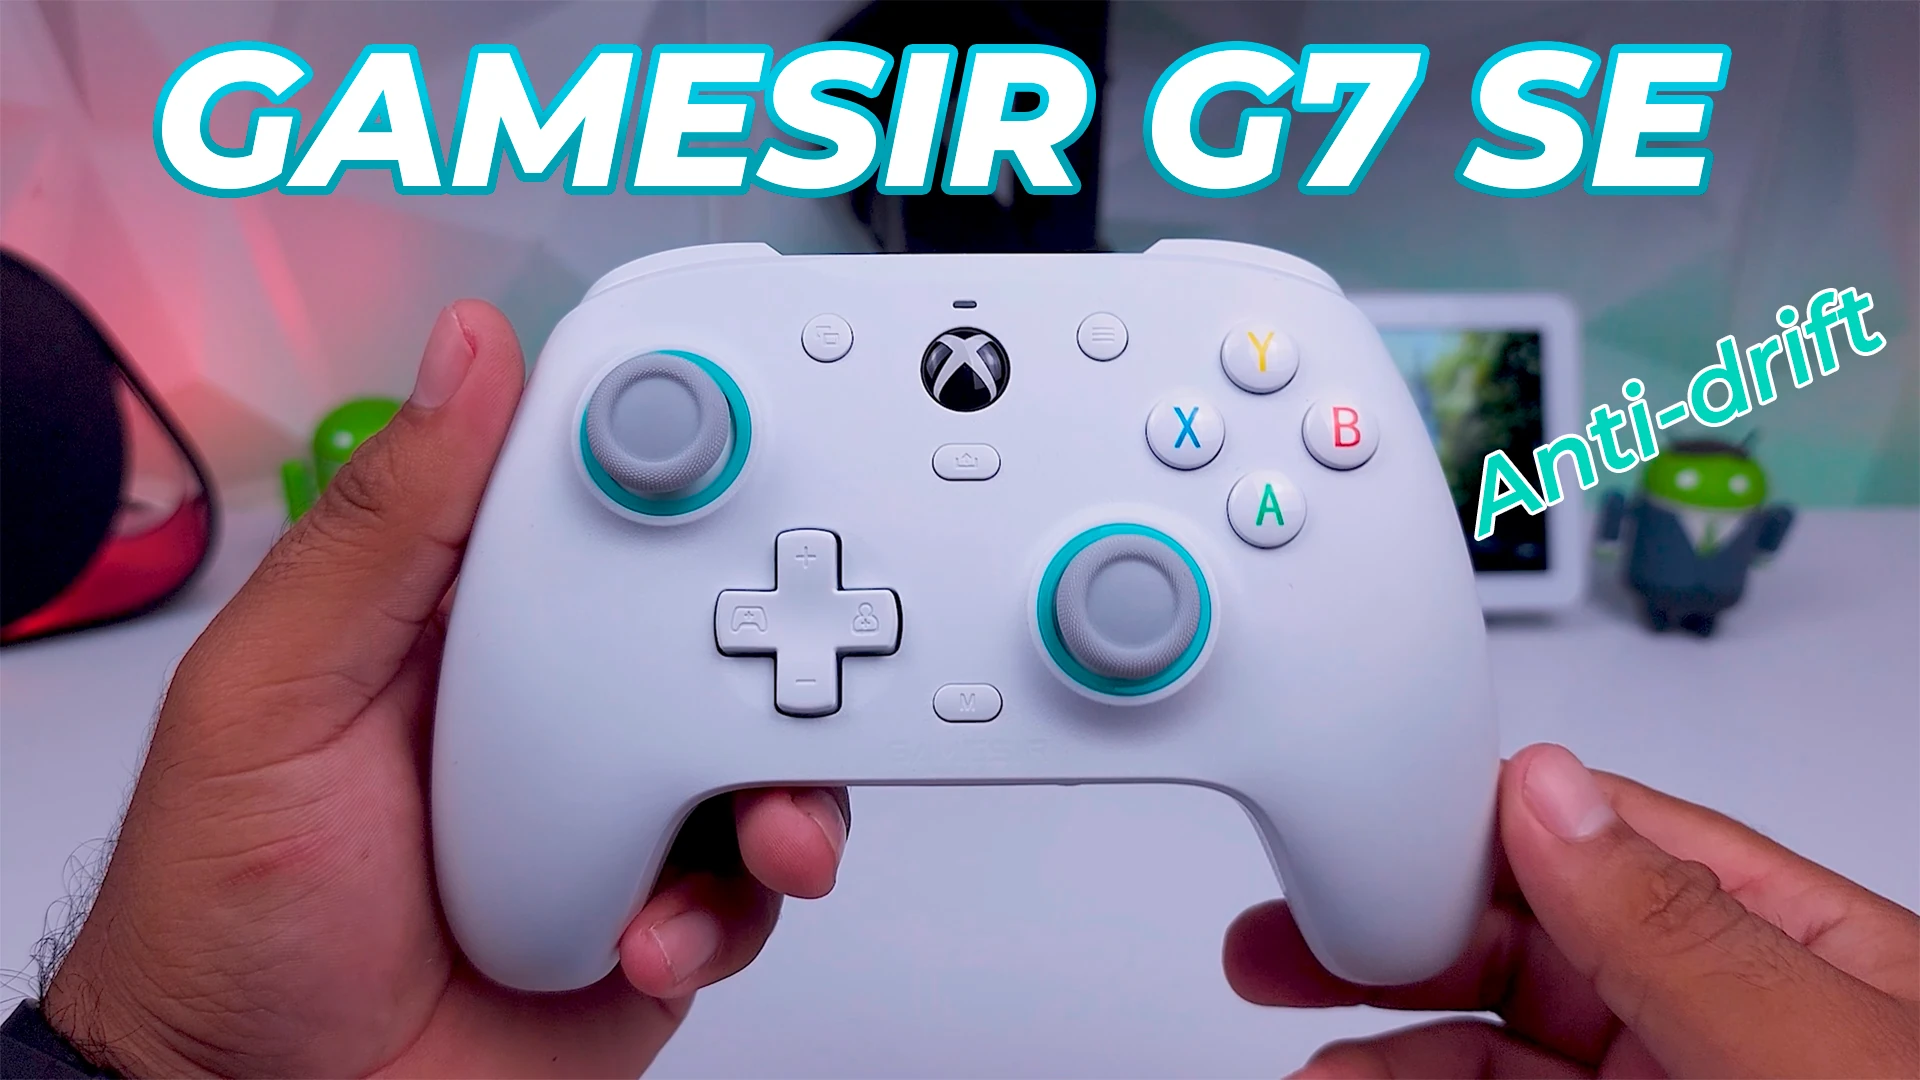 GameSir G7 SE